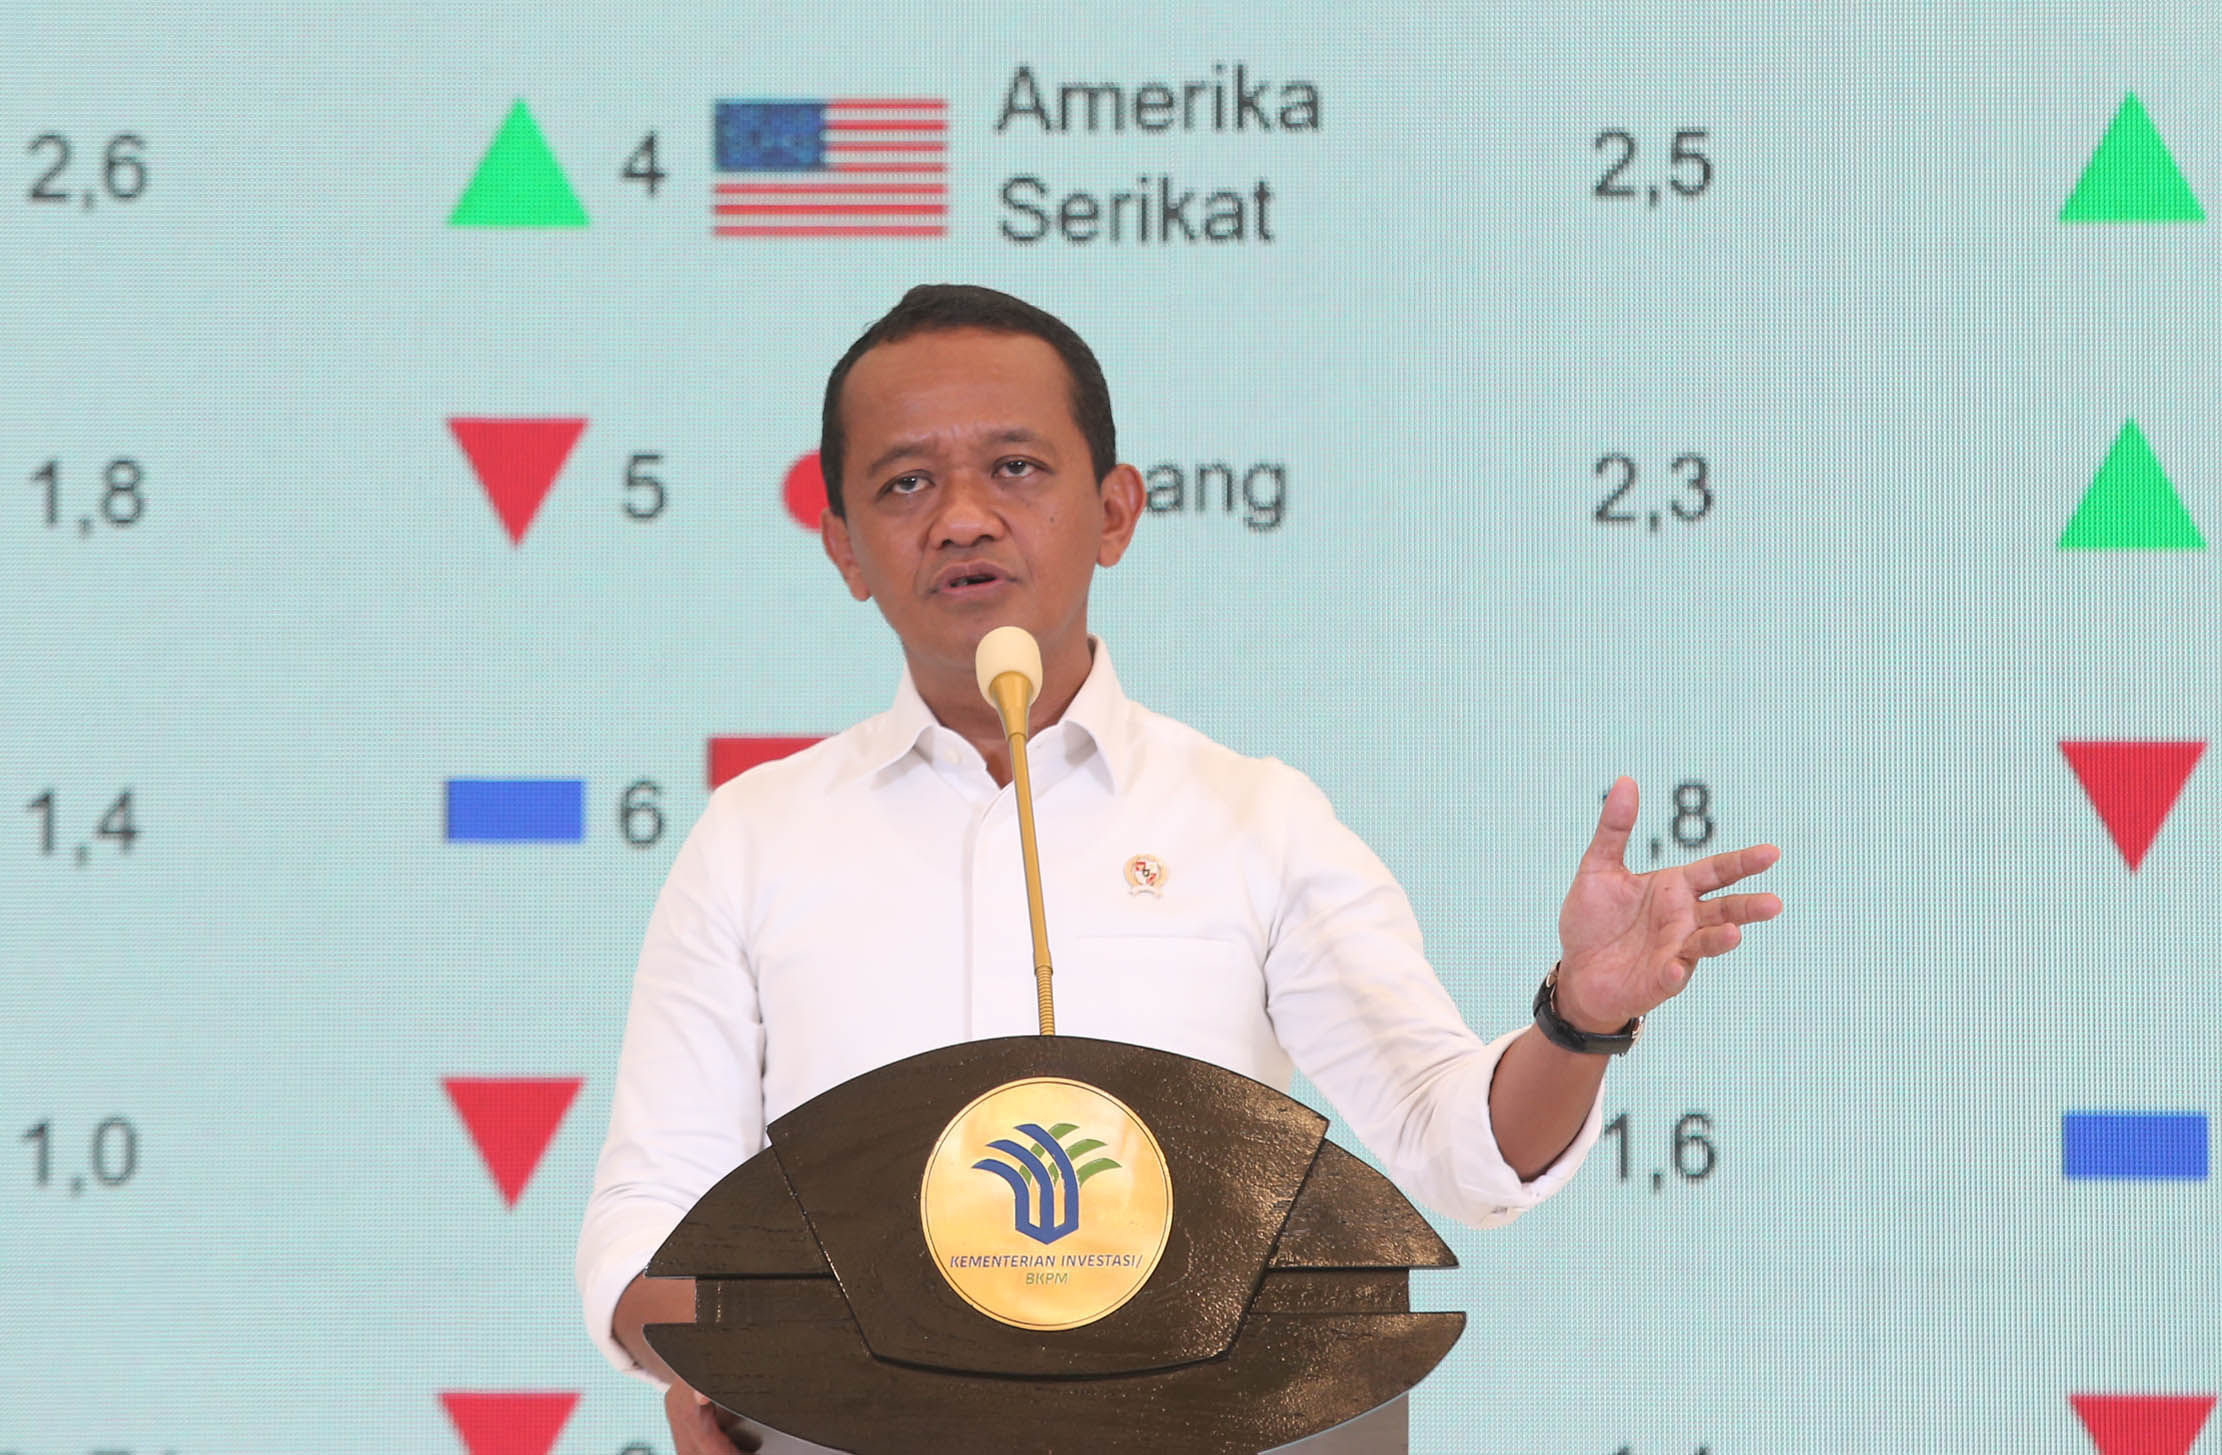 Menteri Investasi/Kepala Badan Koordinasi Penanaman Modal (BKPM) Bahlil Lahadalia saat groundbreaking pabrik PepsiCo di kawasan Cikarang, Jawa Barat. Foto : Panji Asmoro/TrenAsia